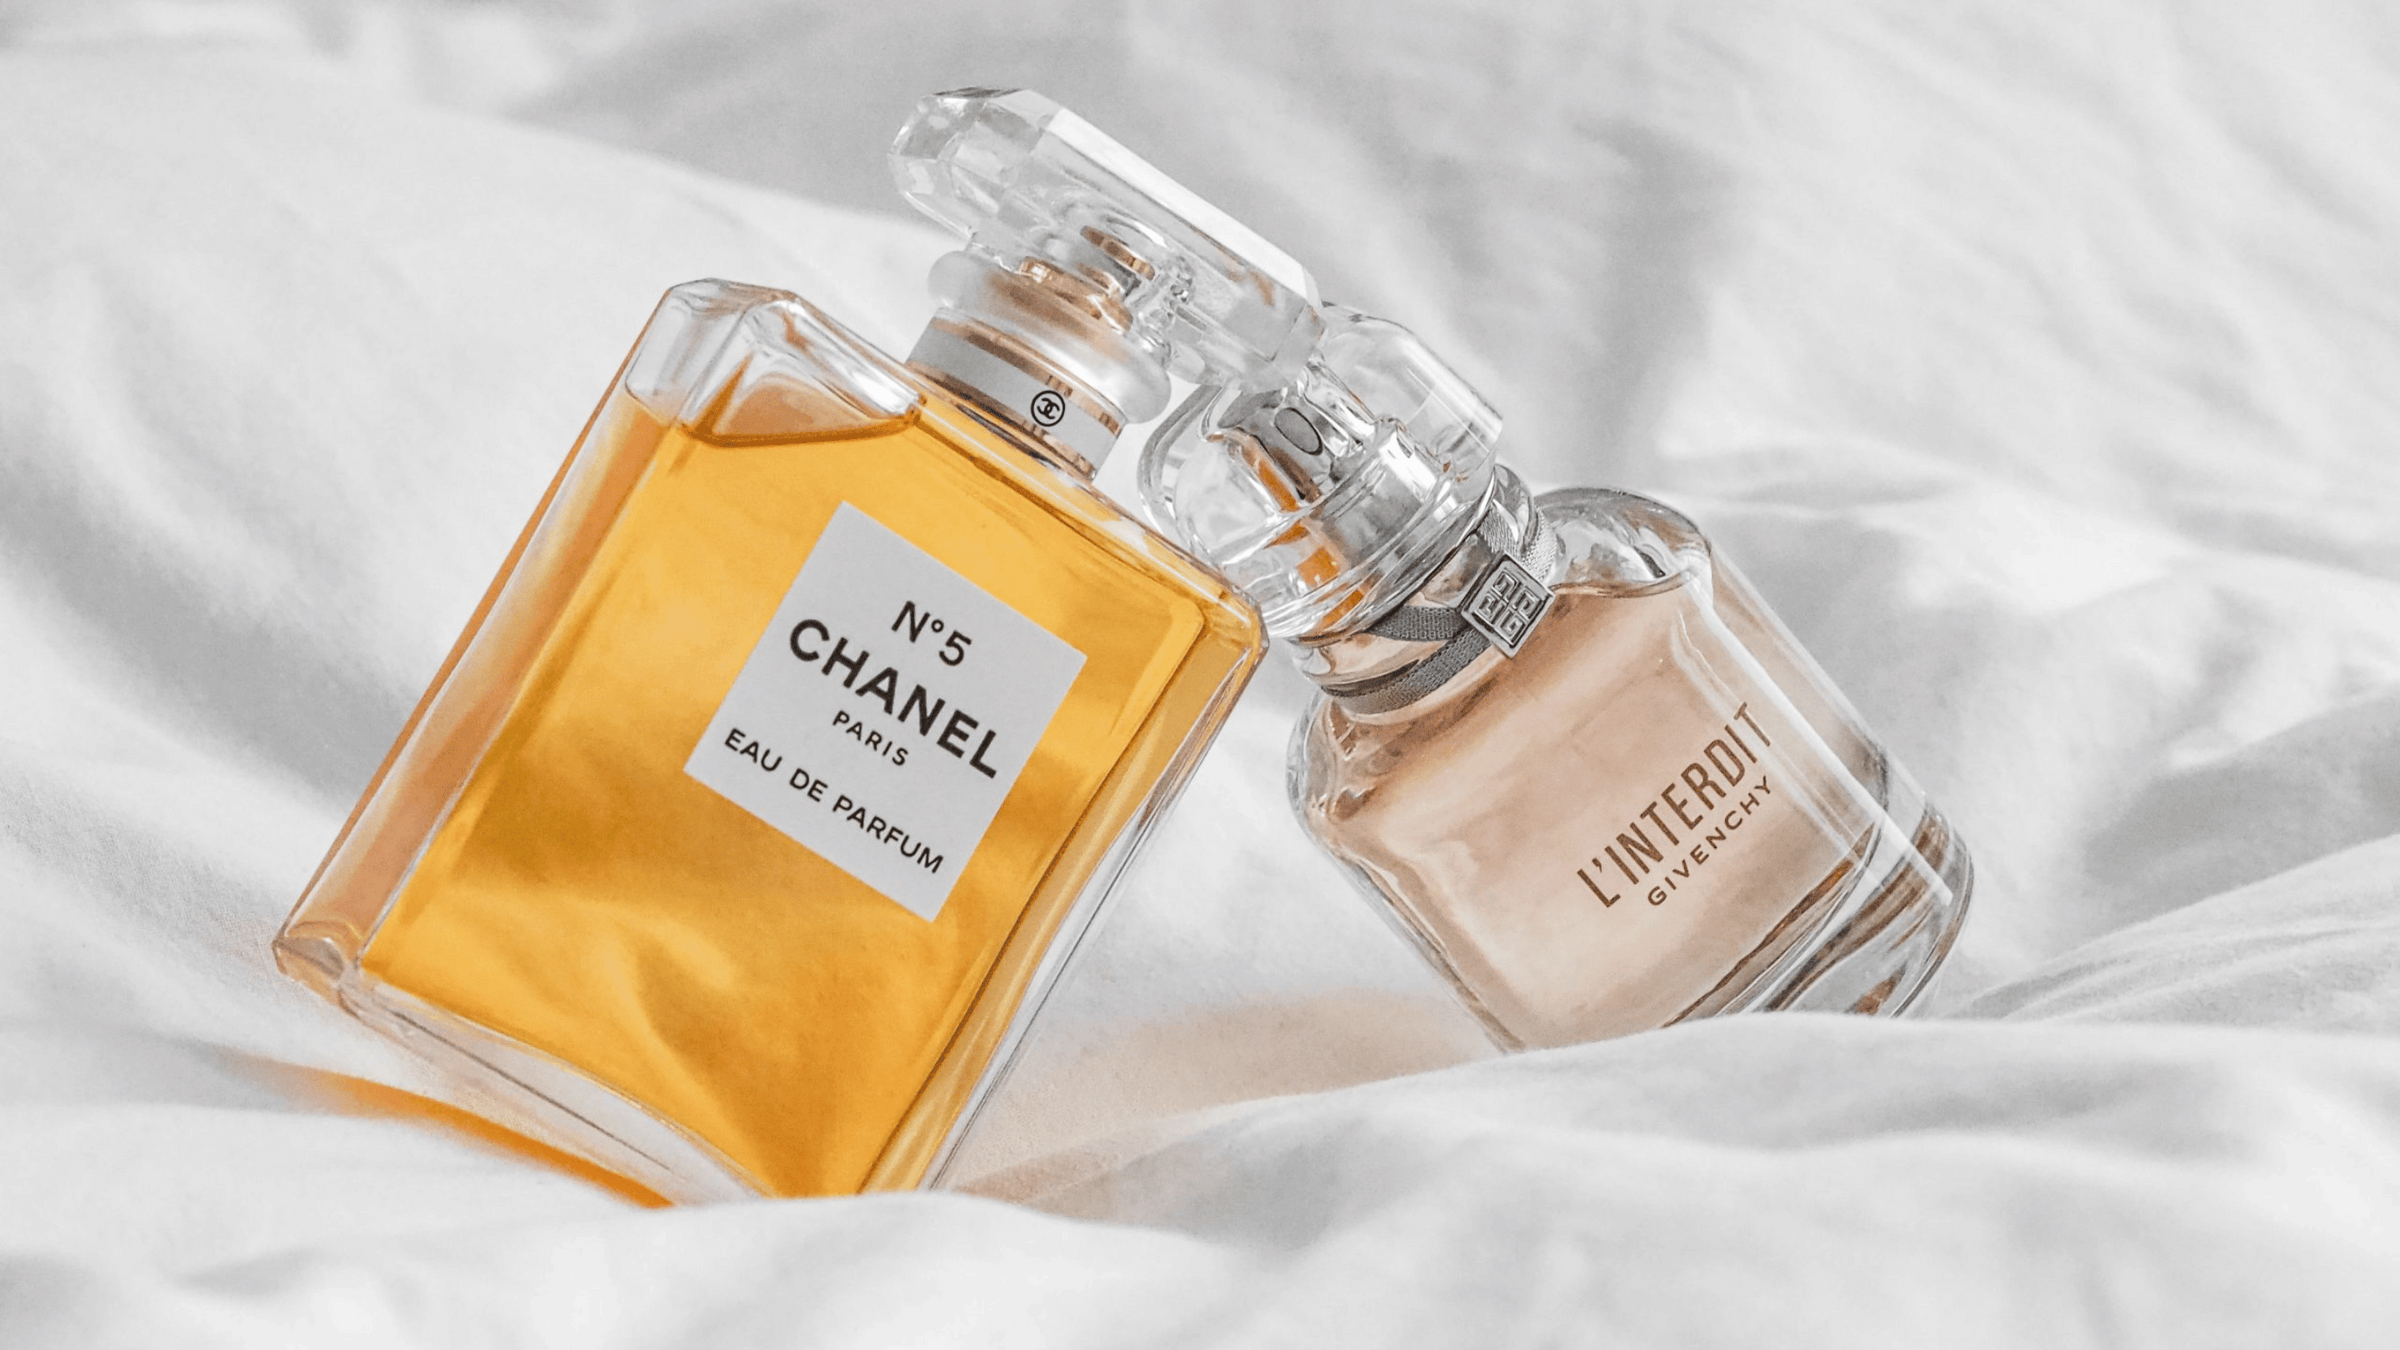 Bild på en parfym från Chanel och en från Givenchy, som ligger i en säng.